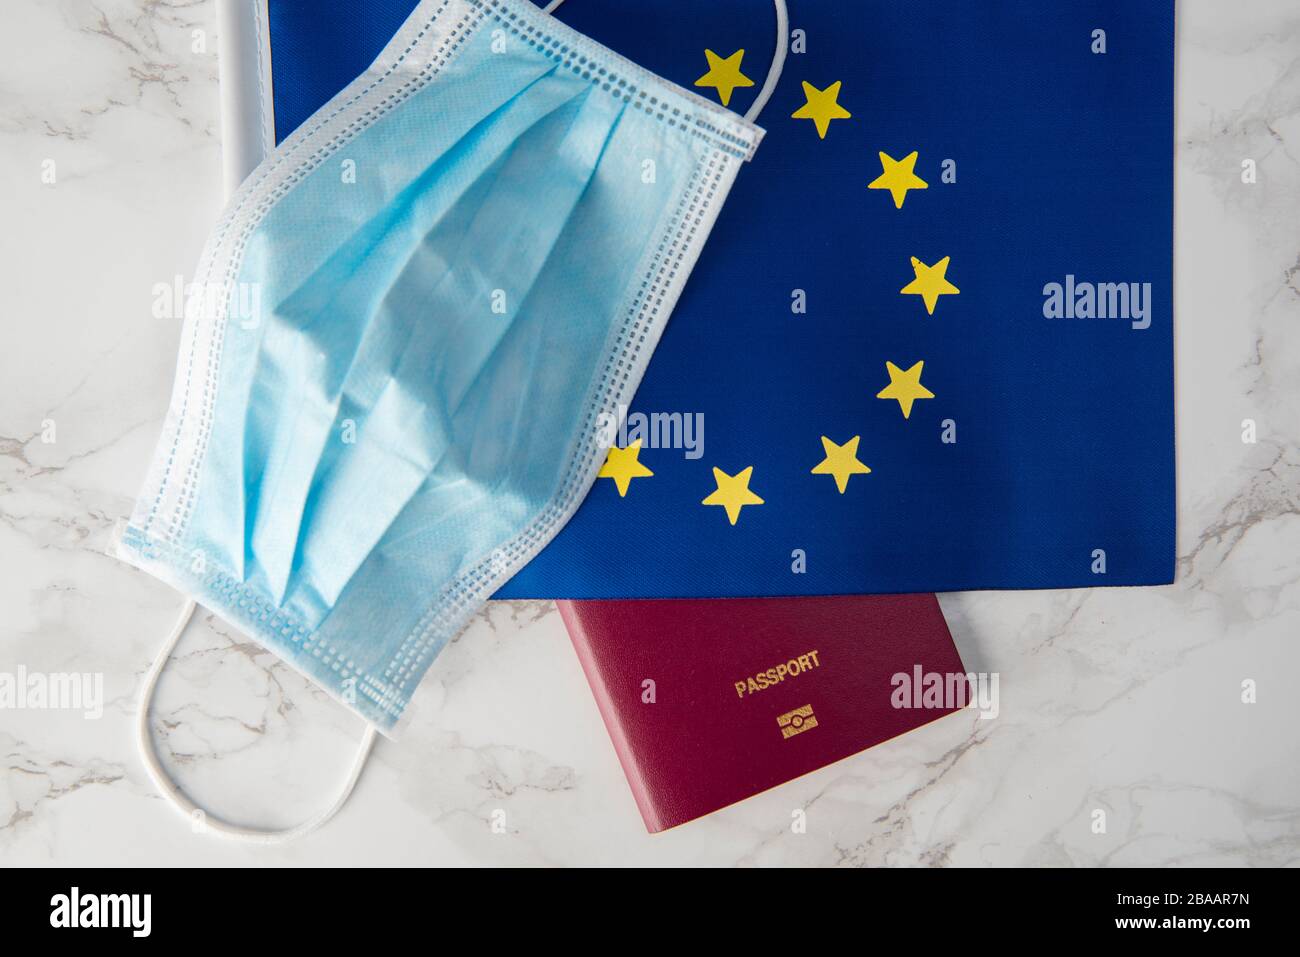 drapeau de l'union européenne et tube à essai de coronavirus avec passeport, interdiction de voyager Banque D'Images